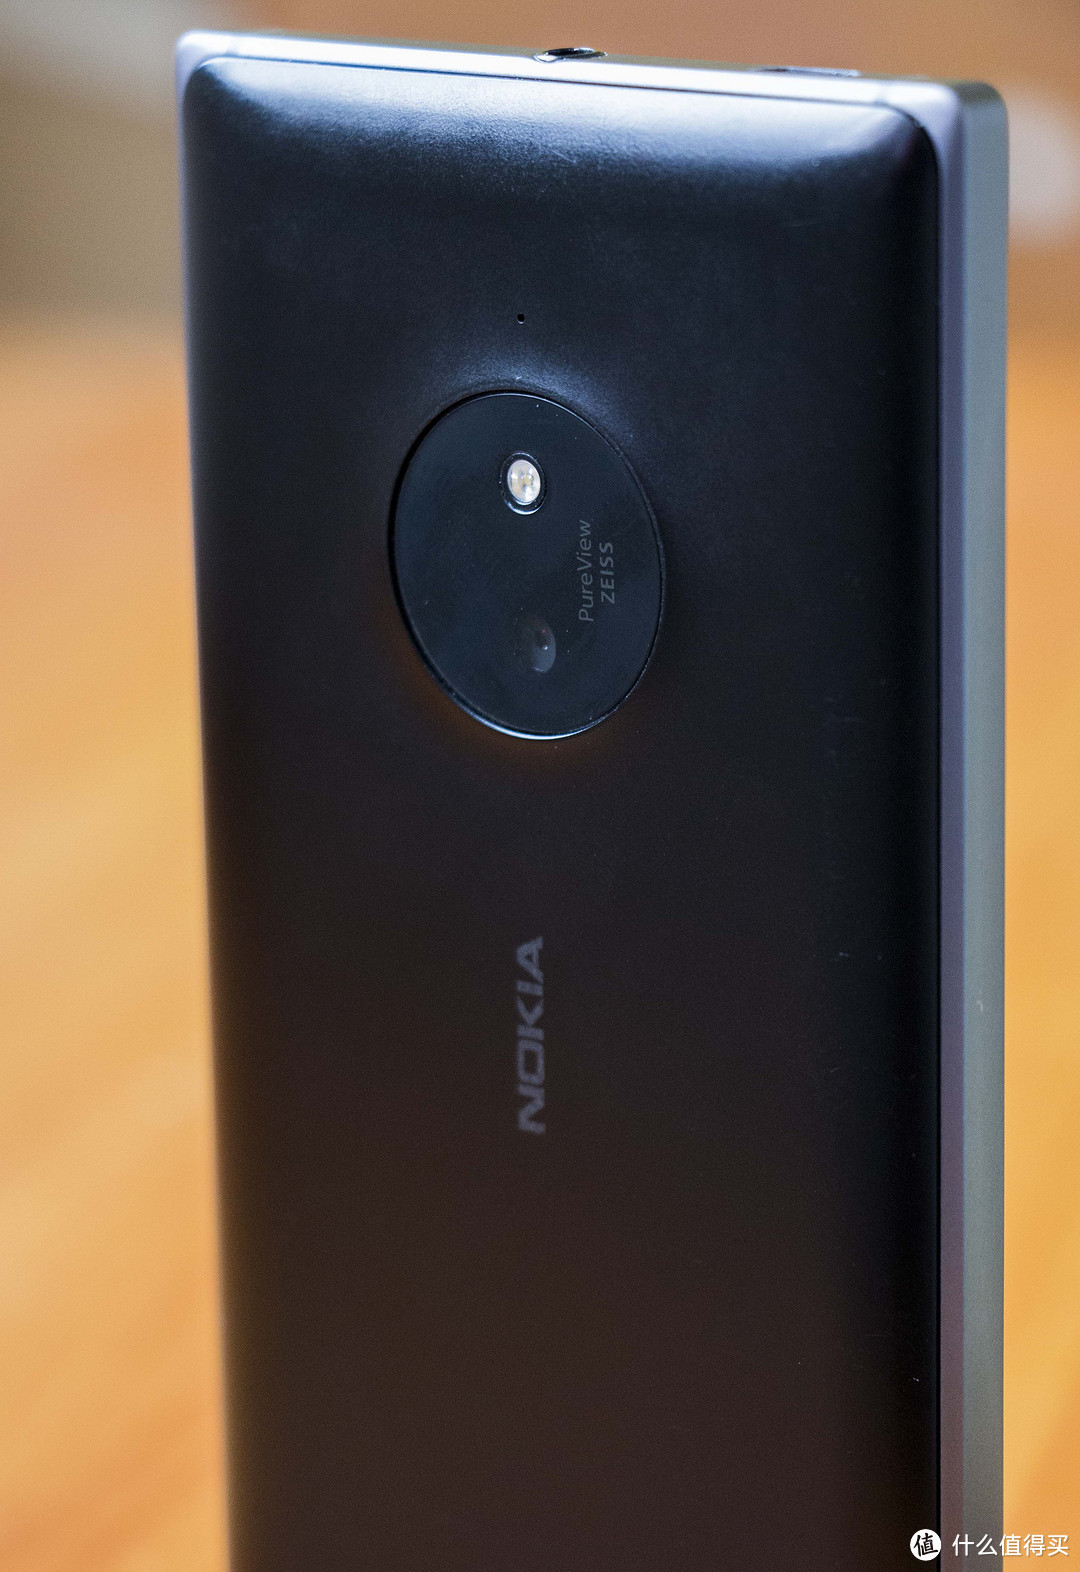 爱之不切，弃之不易  ——Lumia 830 迟来的评测